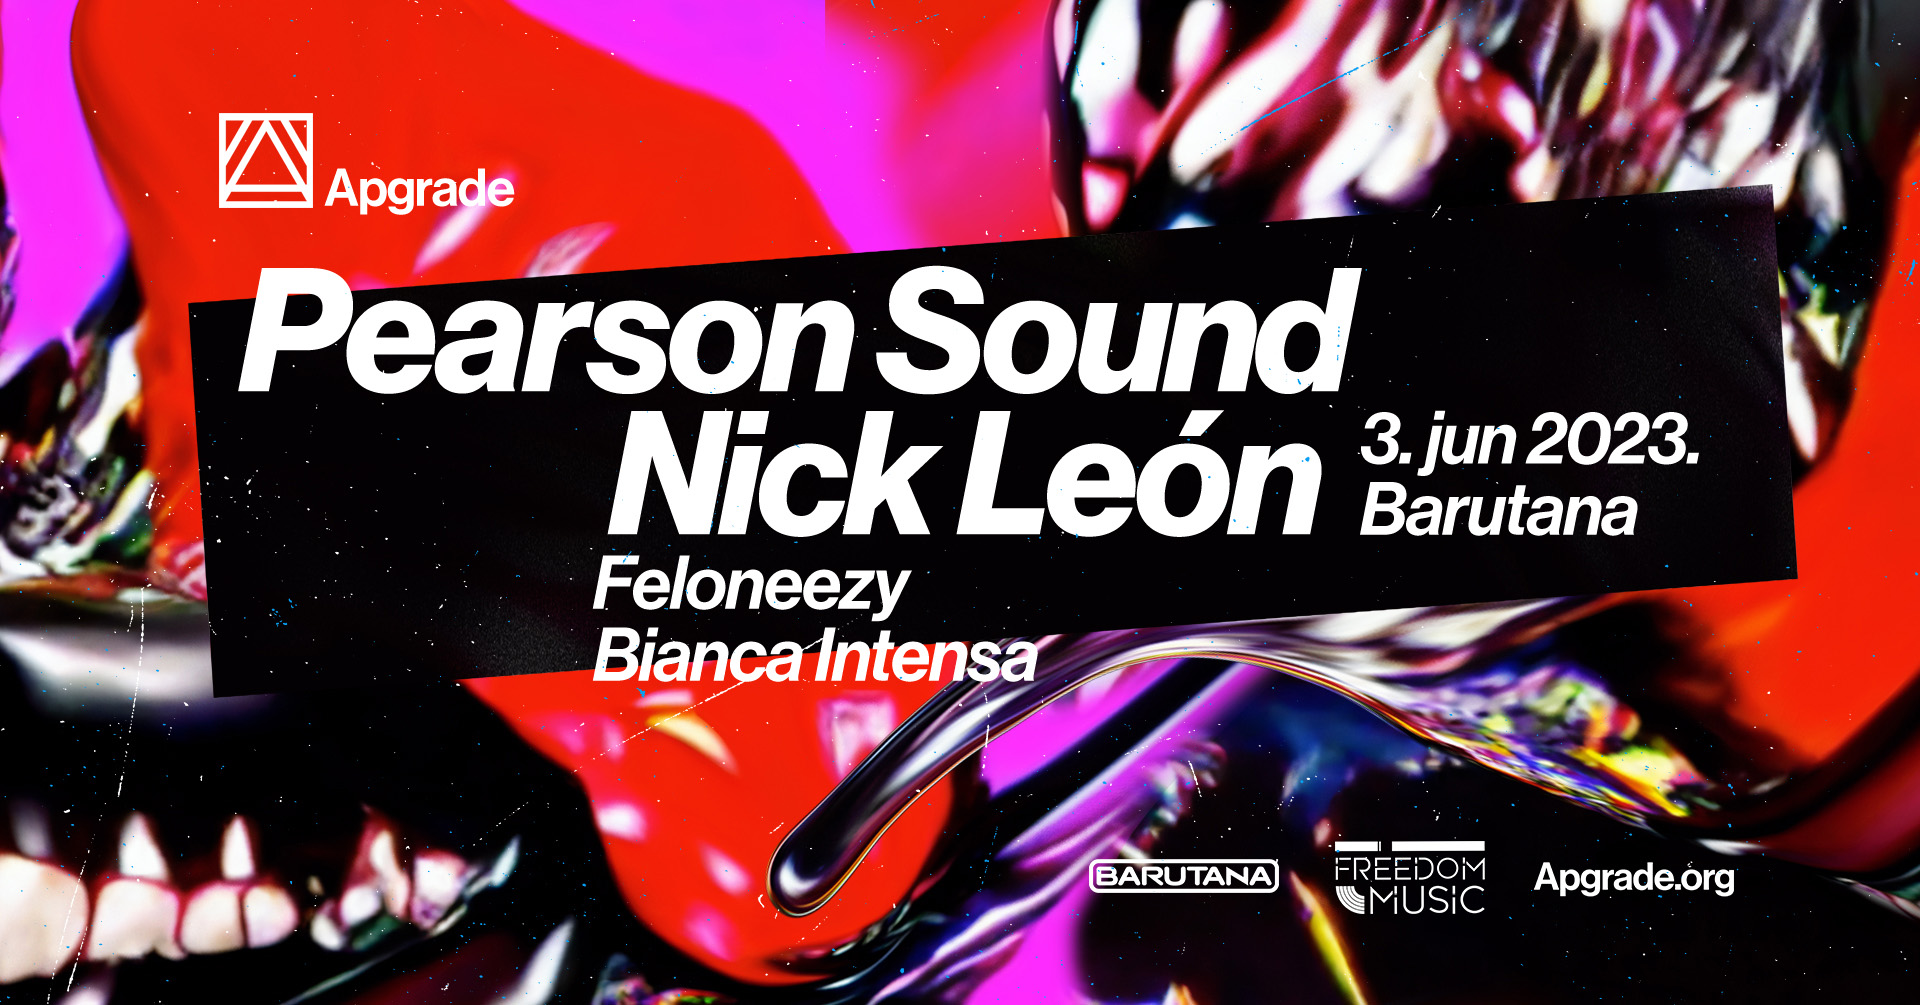 Pearson Sound, Nick León - Apgrade 2023